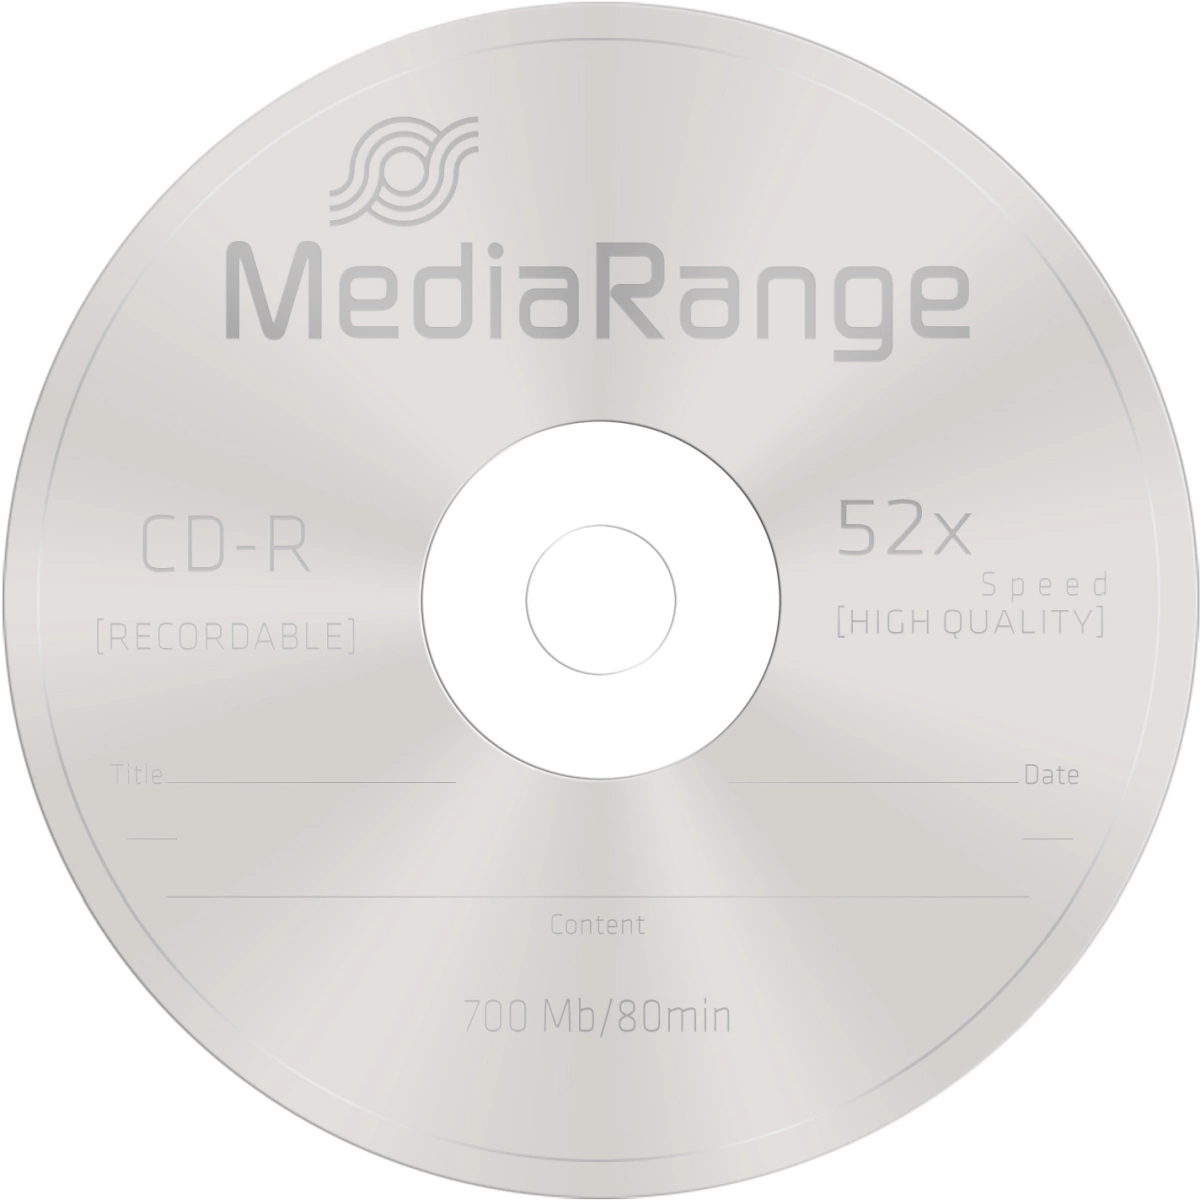 CD-R Rohlinge - 700MB/80Min, 52-fach/Spindel, Packung mit 10 Stück